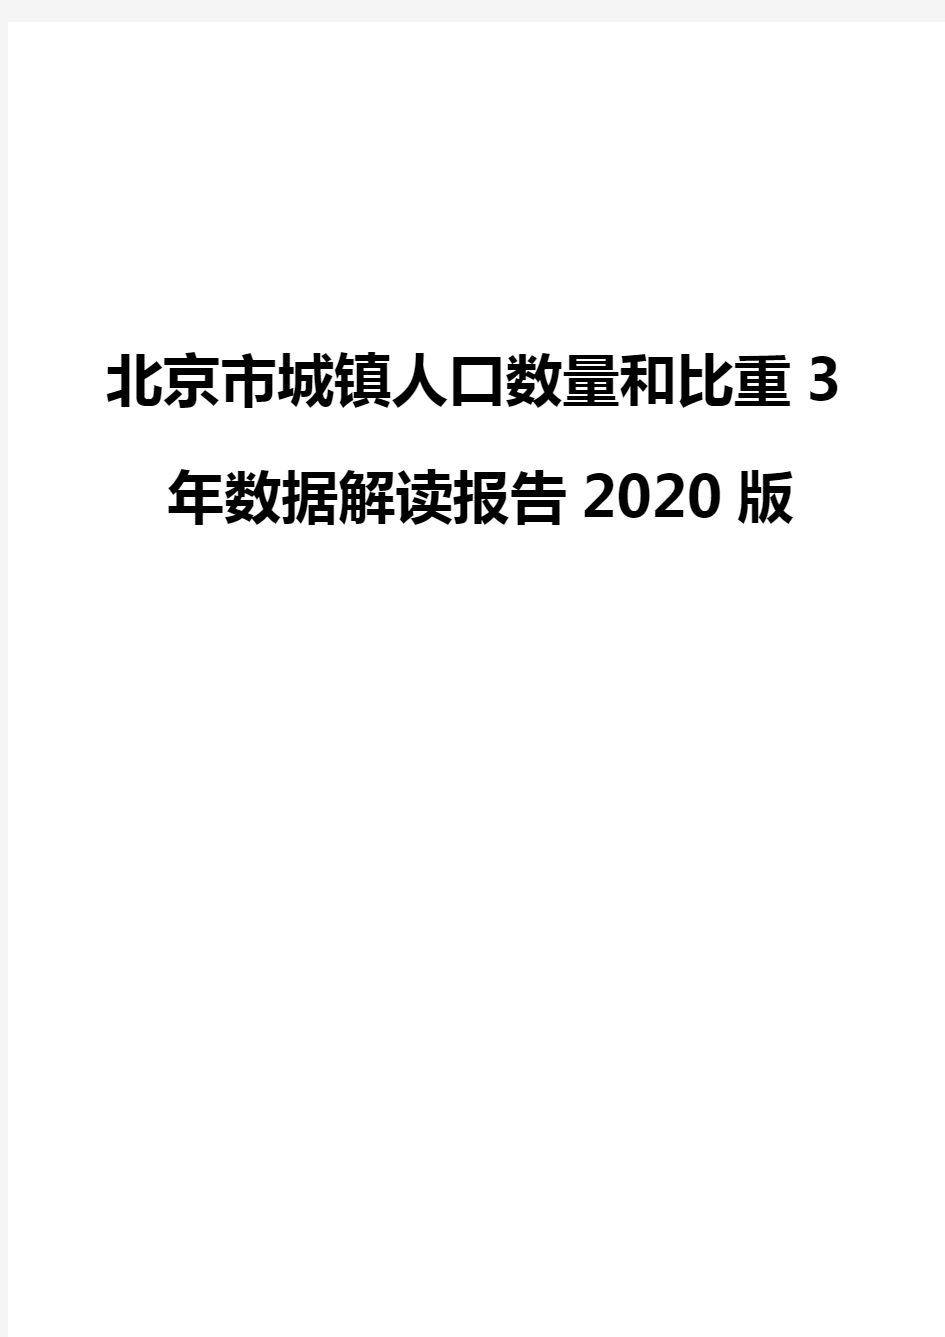 北京市城镇人口数量和比重3年数据解读报告2020版